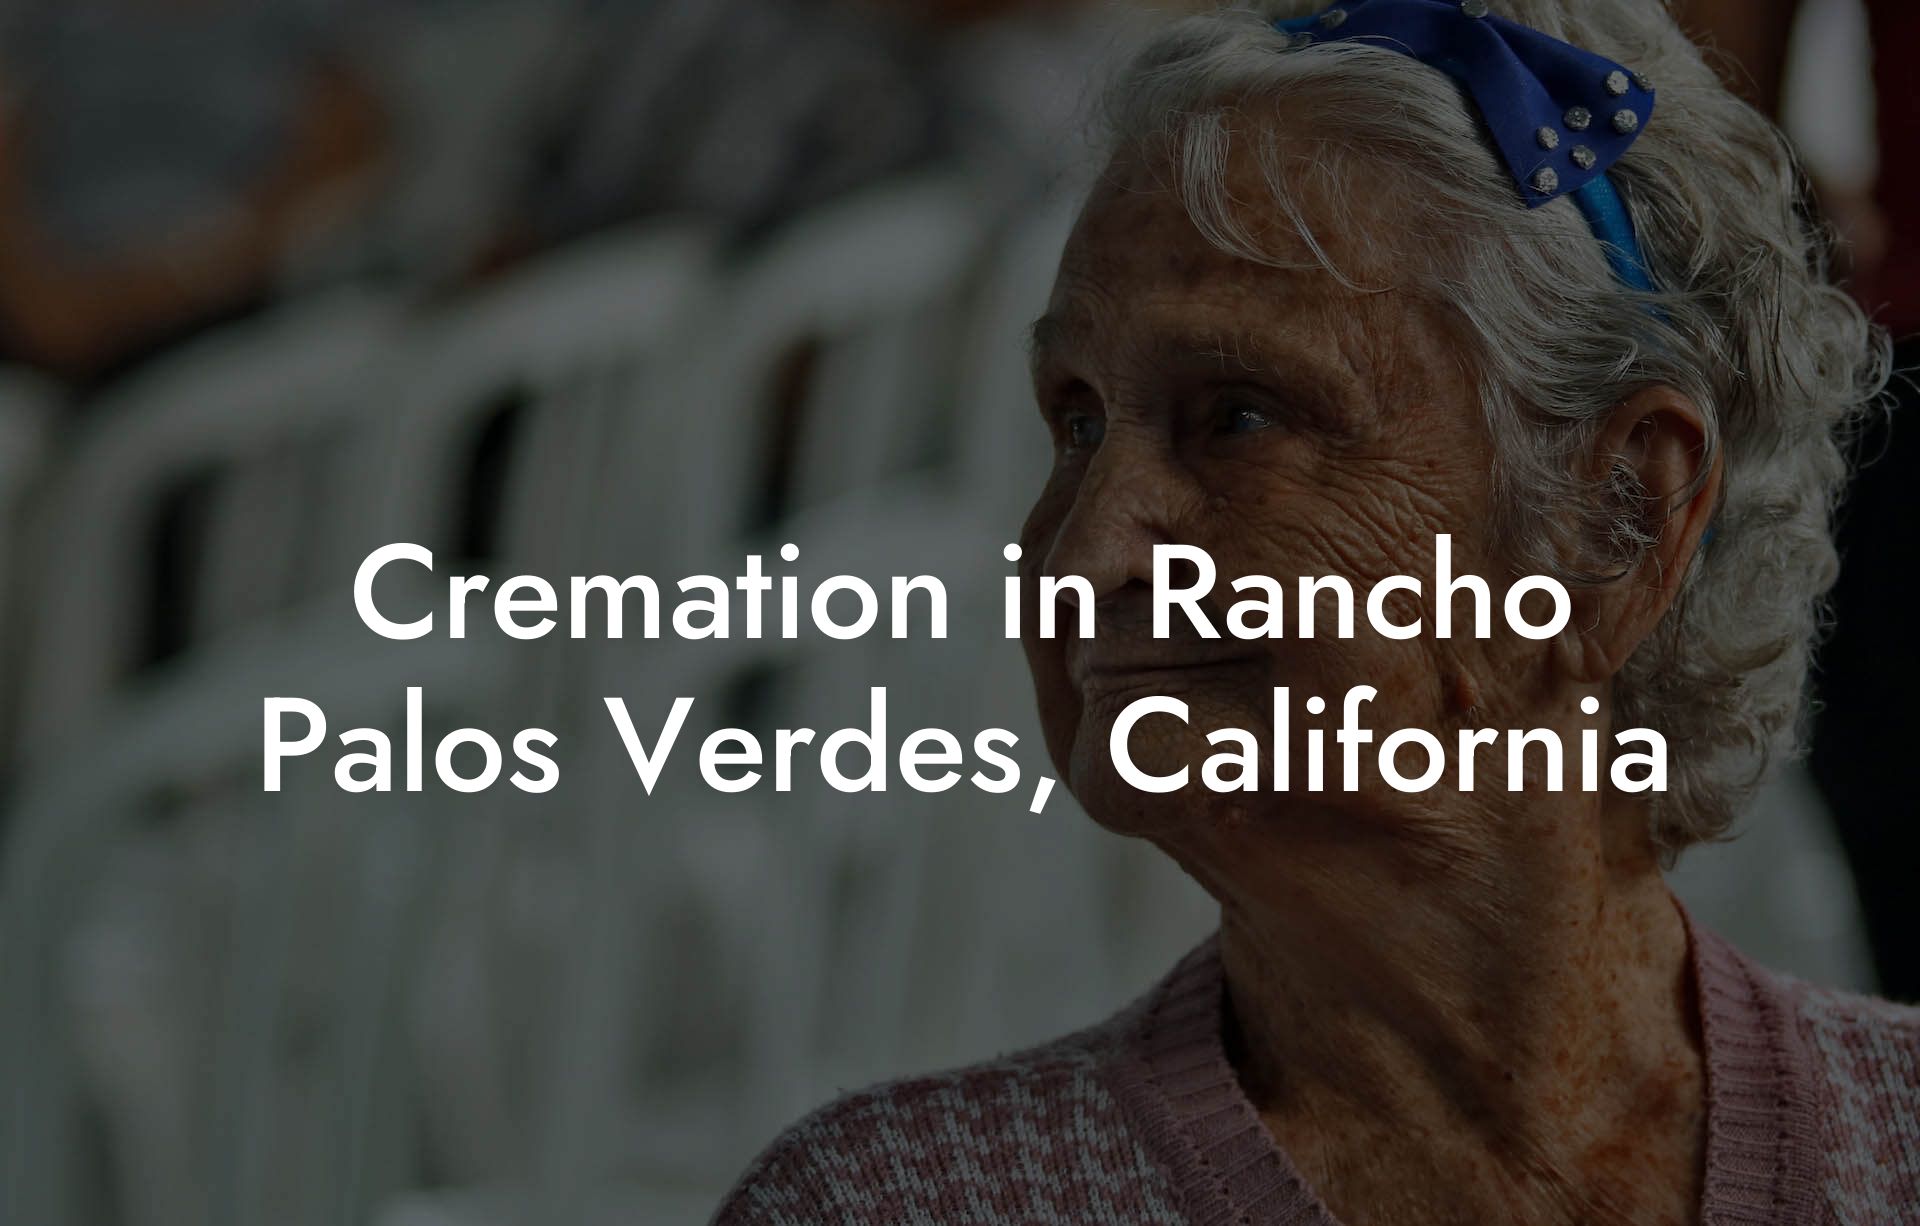 Cremation in Rancho Palos Verdes, California